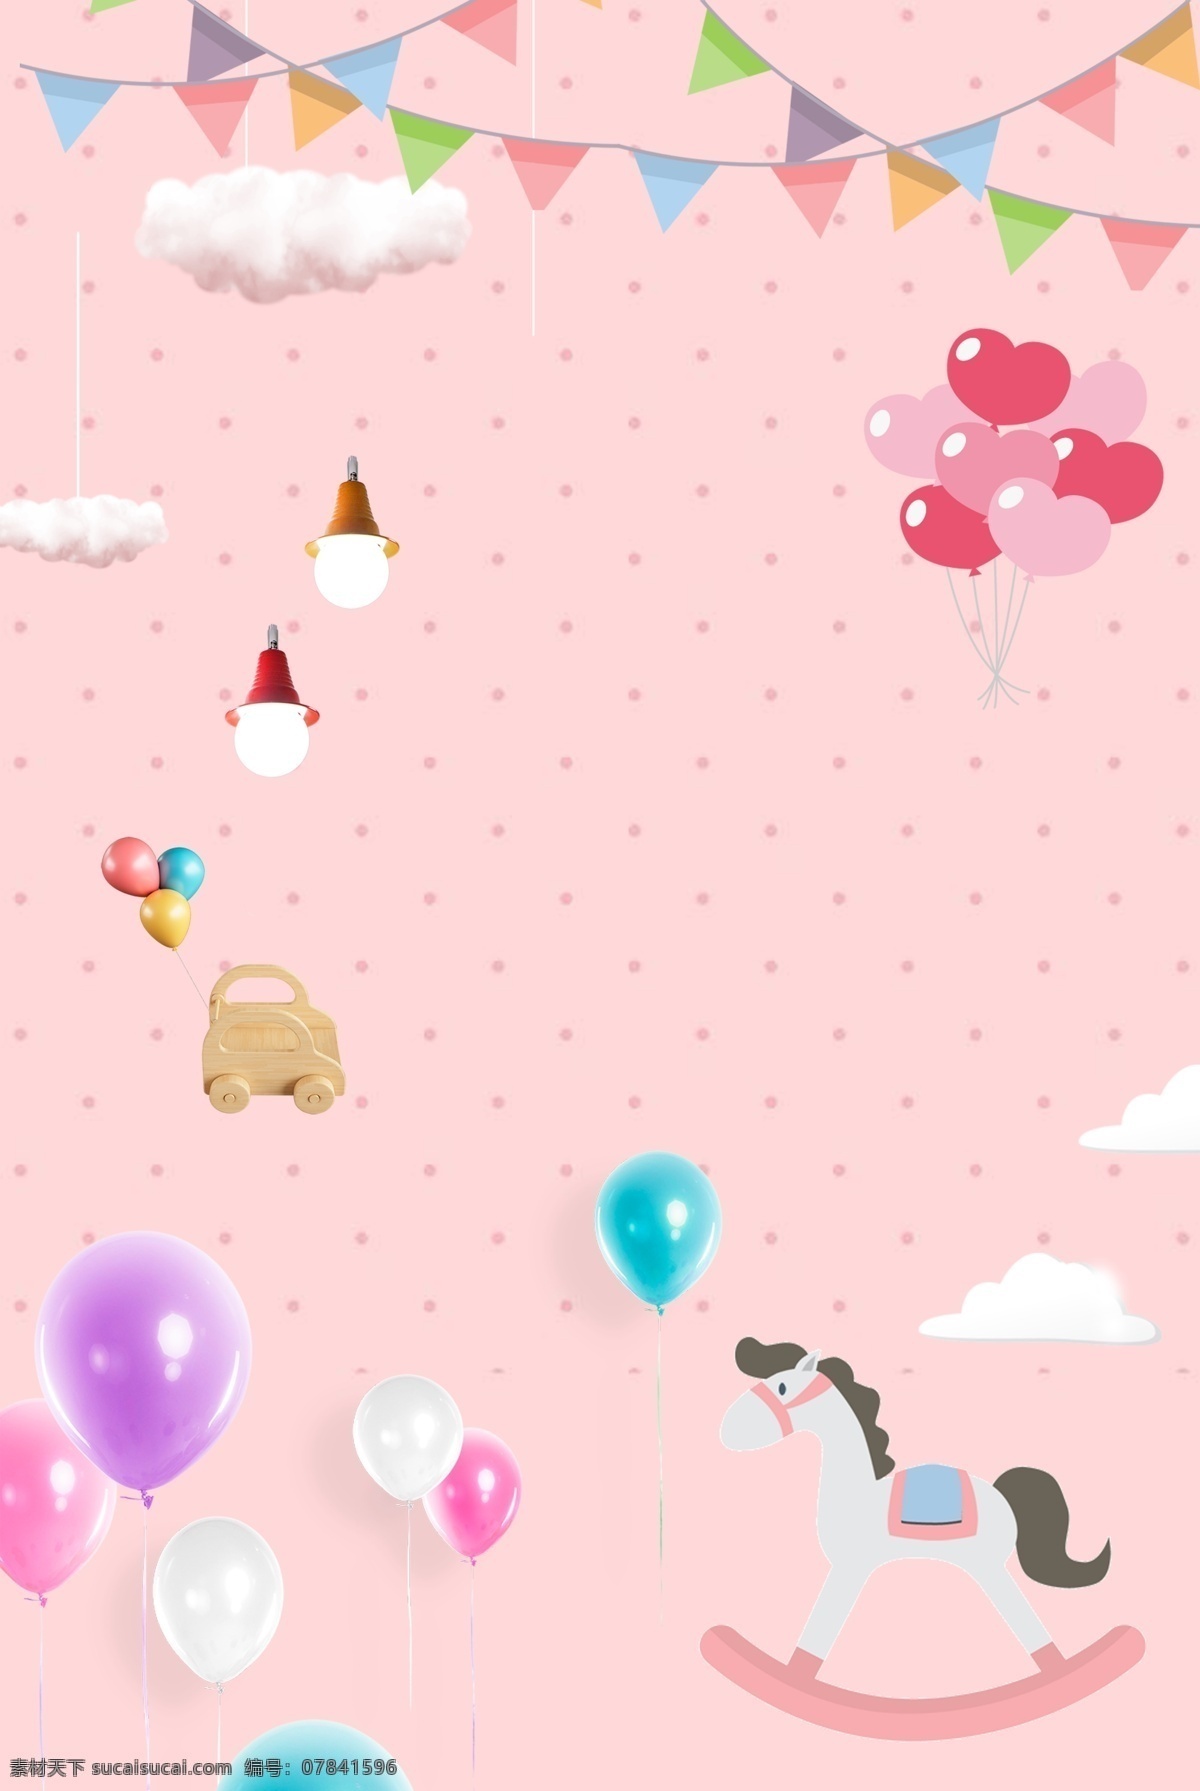 61 儿童节 粉色 可爱 海报 背景 清新 撞色气球 木马 简约 psd分层 海报背景